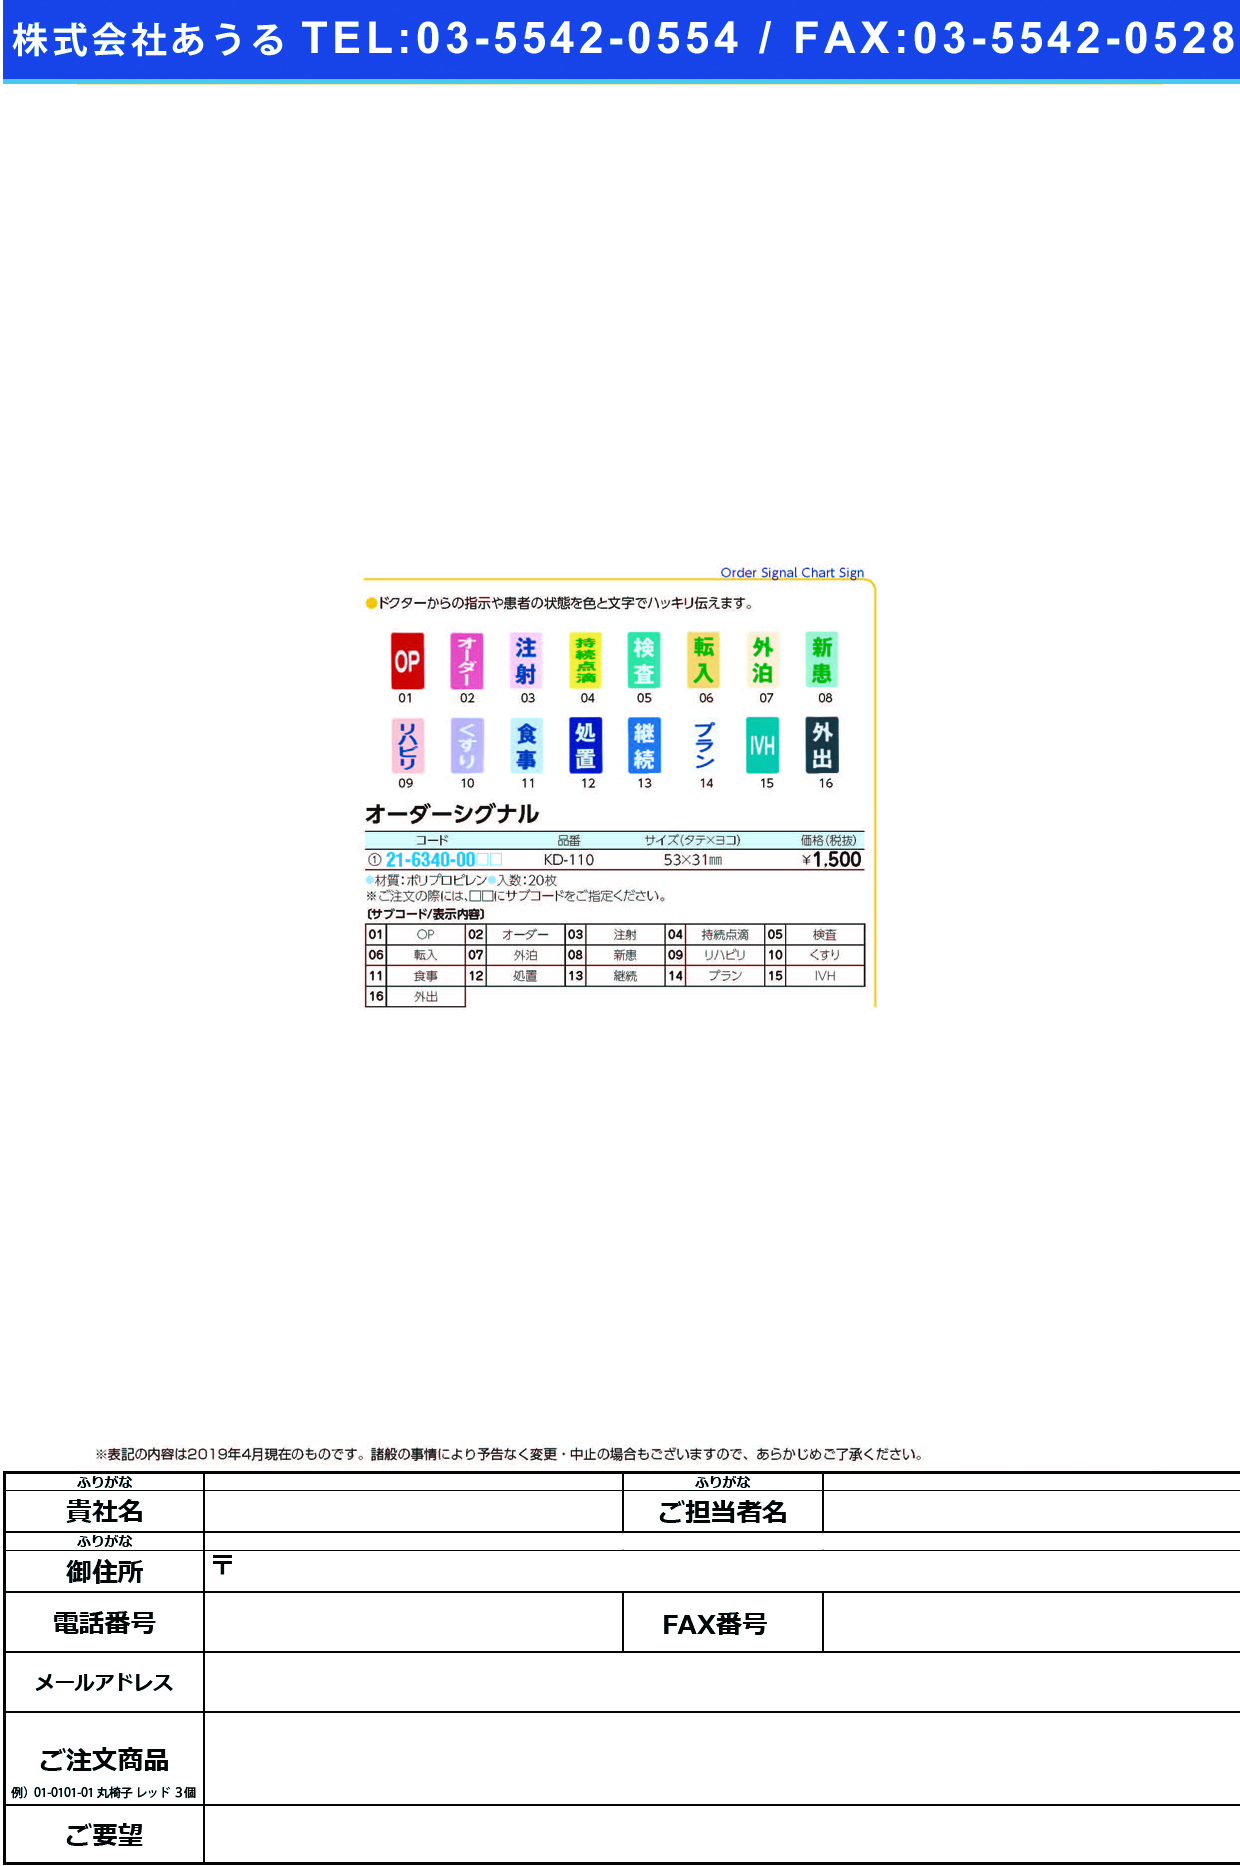 (21-6340-00)オーダーシグナル KD-110(20ﾏｲｲﾘ) ｵｰﾀﾞｰｼｸﾞﾅﾙ 新患(ケルン)【1袋単位】【2019年カタログ商品】